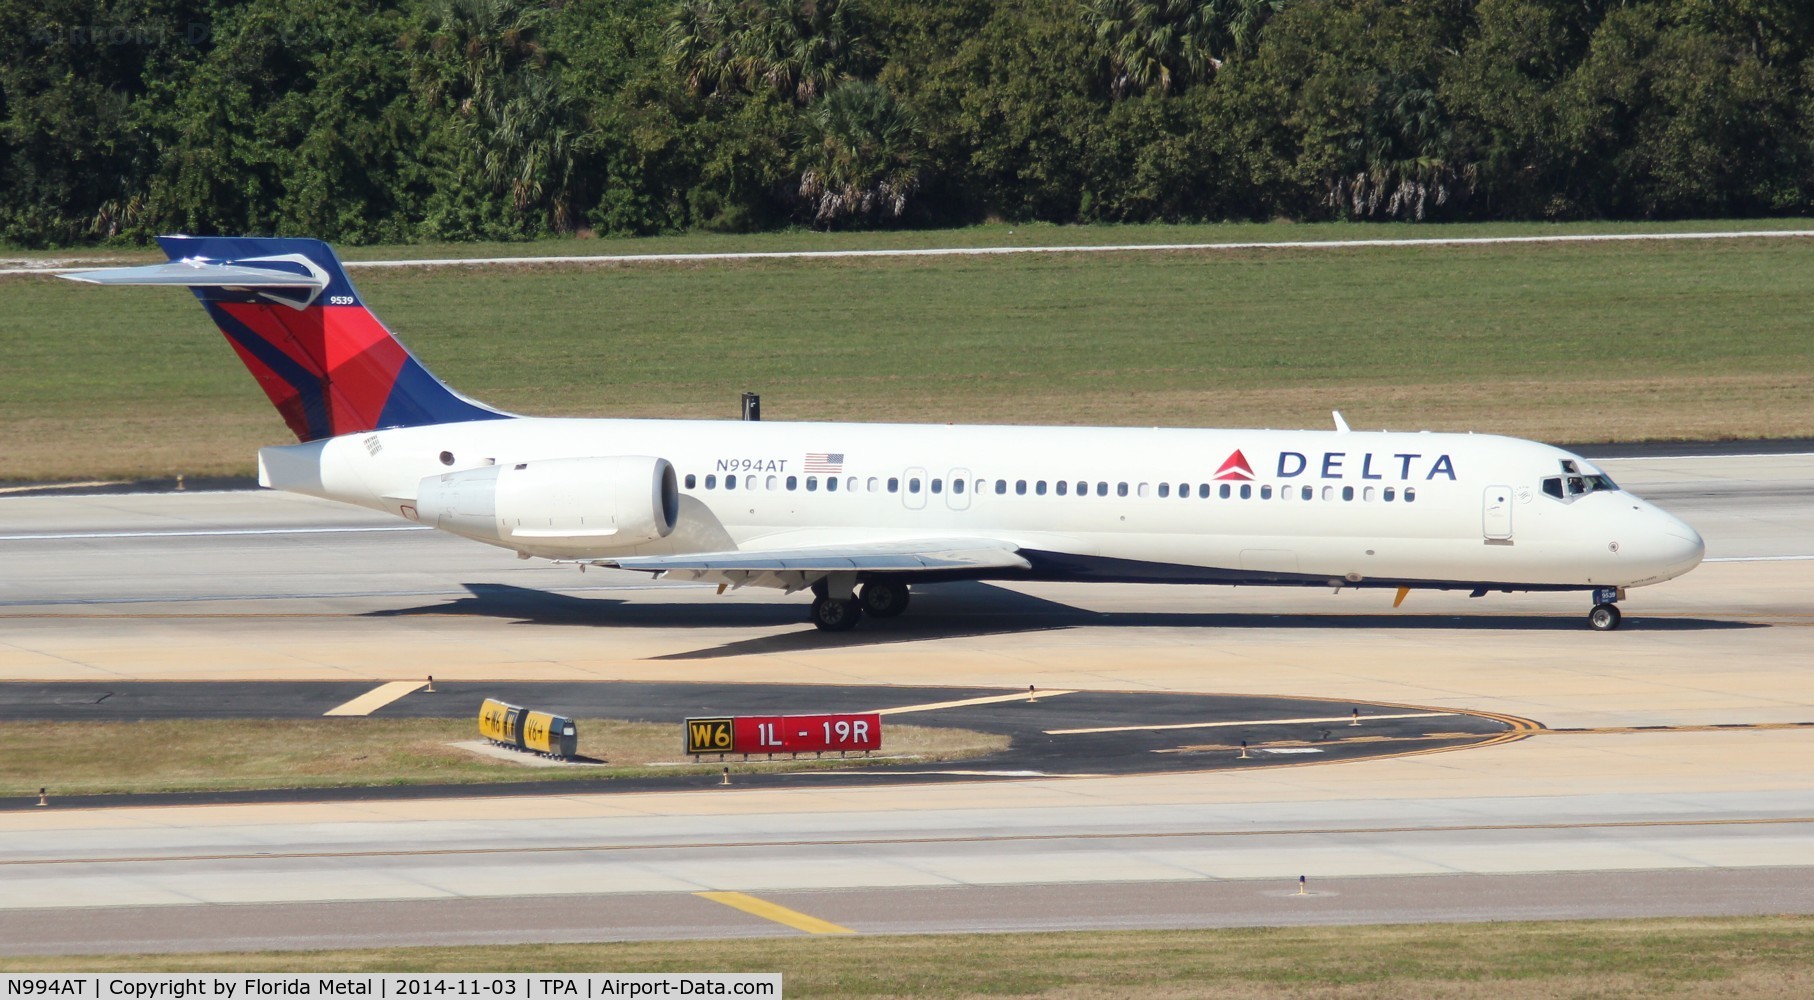 N994AT, 2002 Boeing 717-200 C/N 55138, Delta